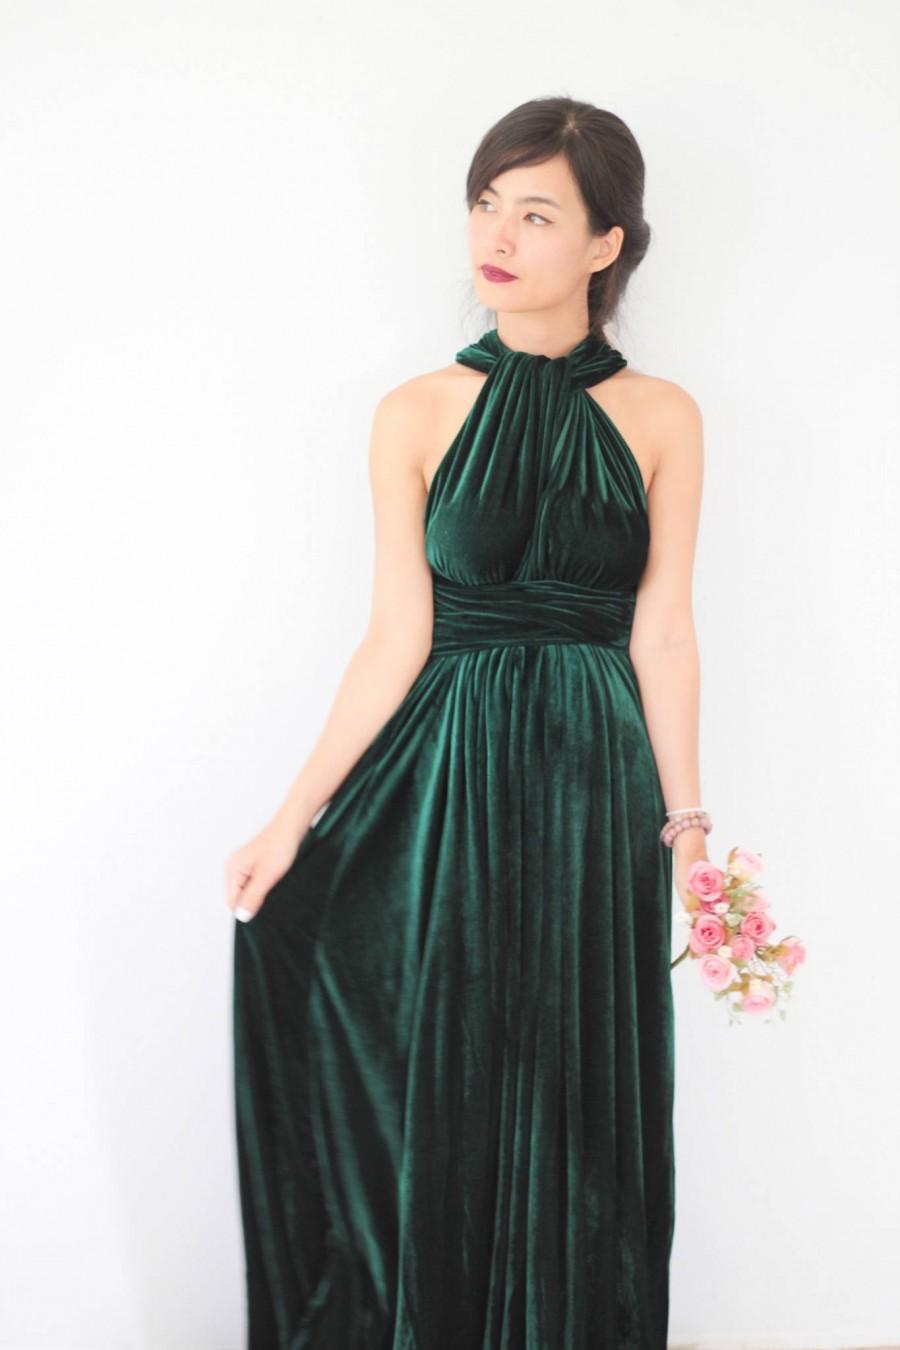 Wedding - Green Velvet Dress, Bridesmaid Dress, Infinity Dress, Prom Dress, Convertible Dress, Wrap Dress, Long Dress, Eveing Dress, Ball Gown